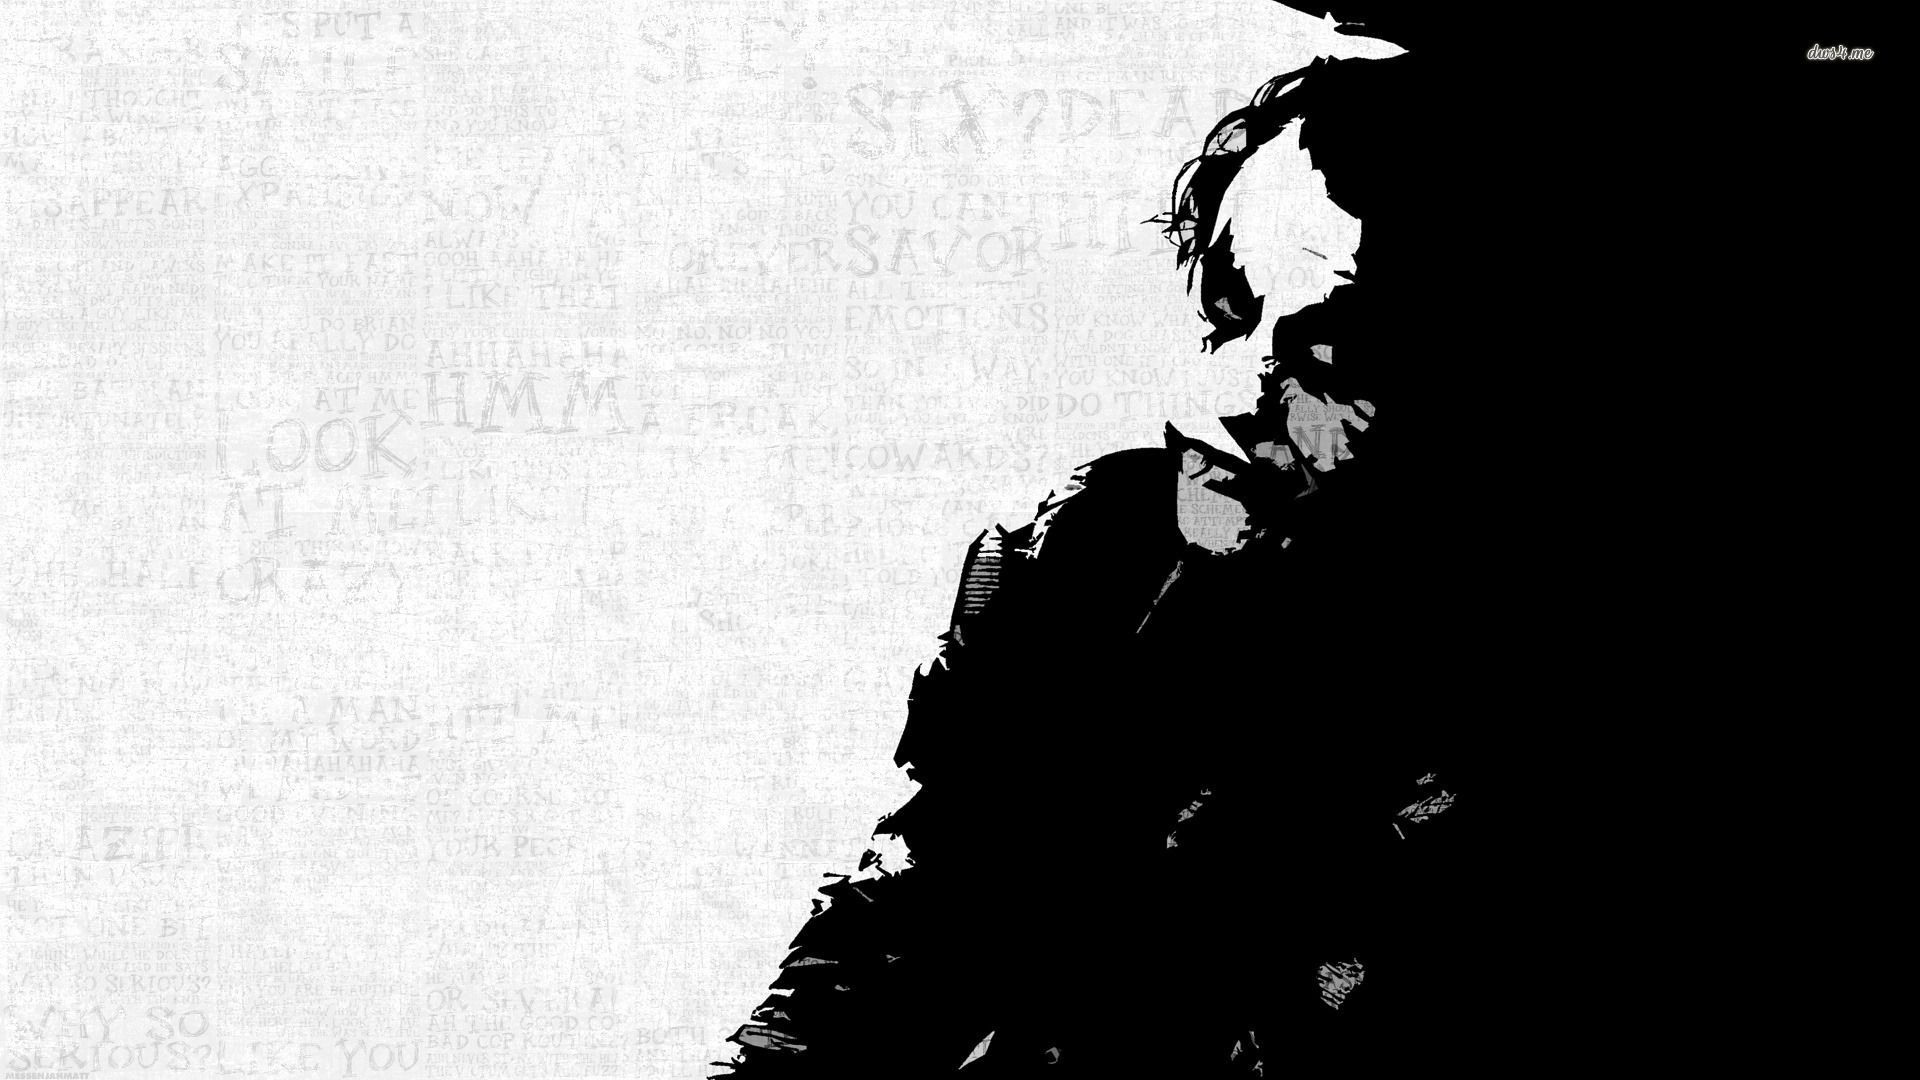 The Dark Knight - Joker wallpaper - Movie wallpapers - #6186